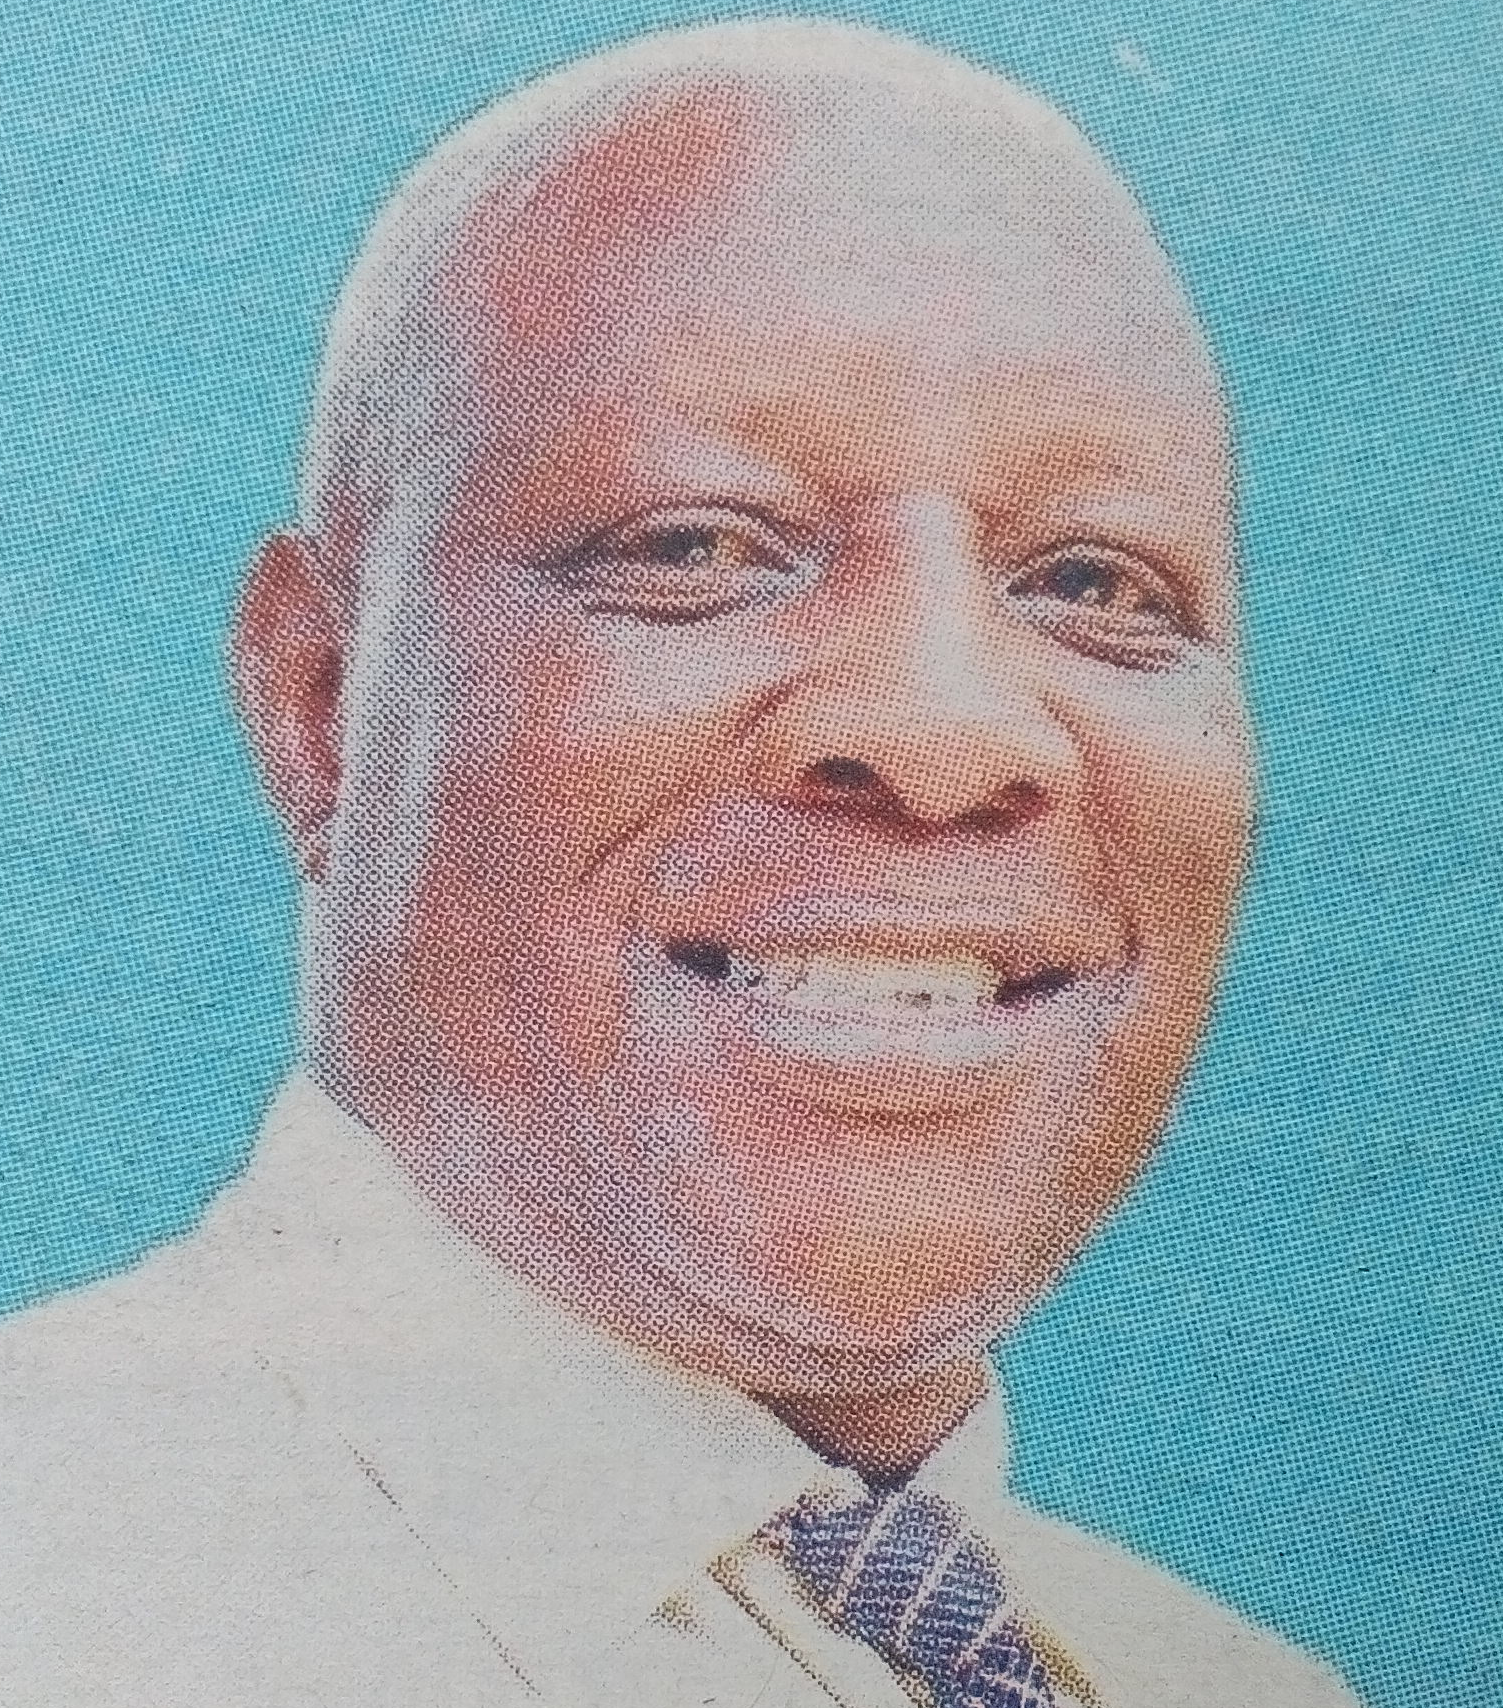 Obituary Image of Donald Ochieng Okola